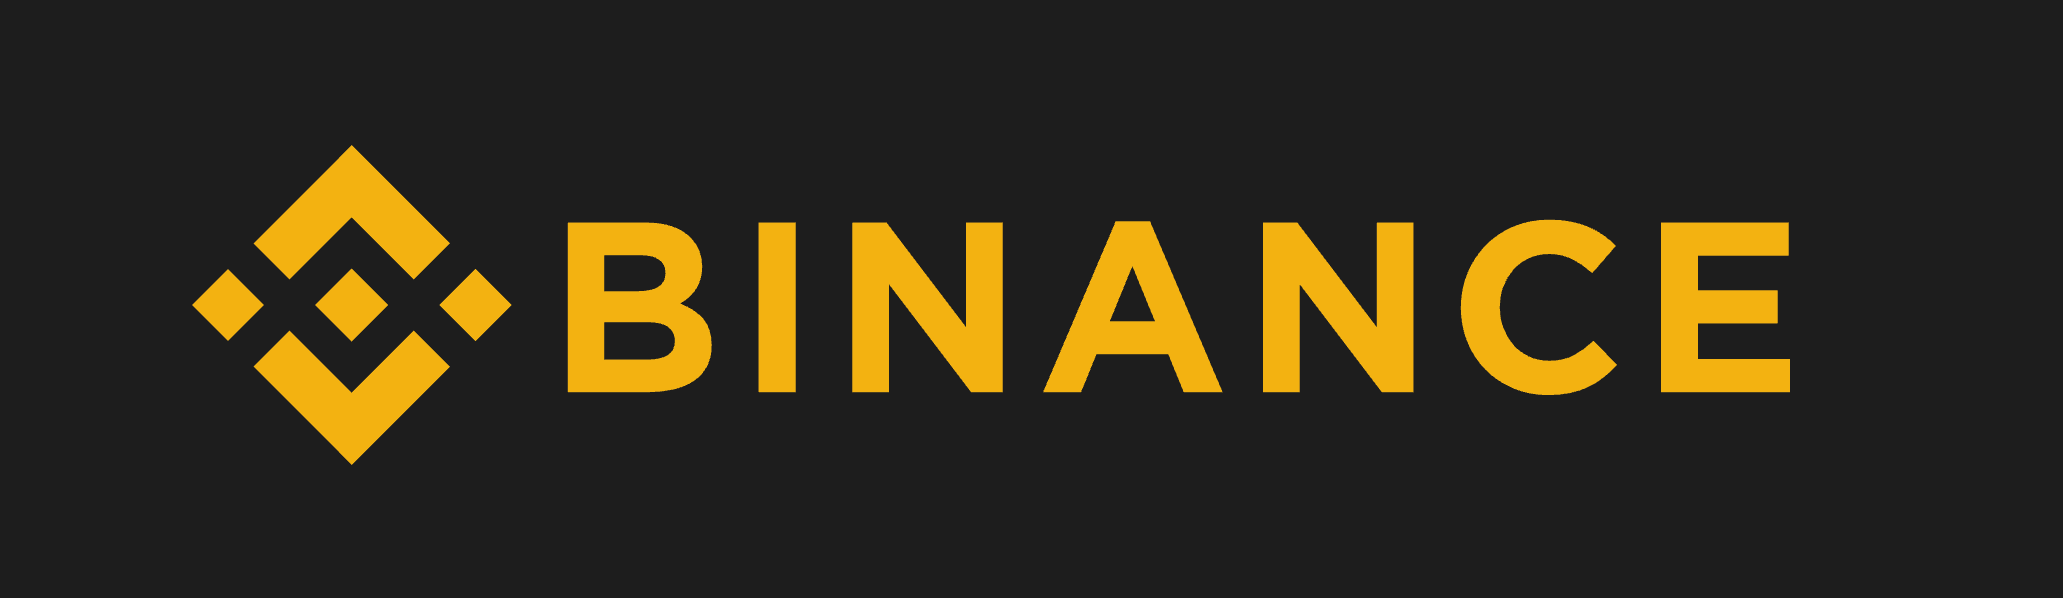 Binance（バイナンス）がシステムアップグレードを完了し、サービス再開！